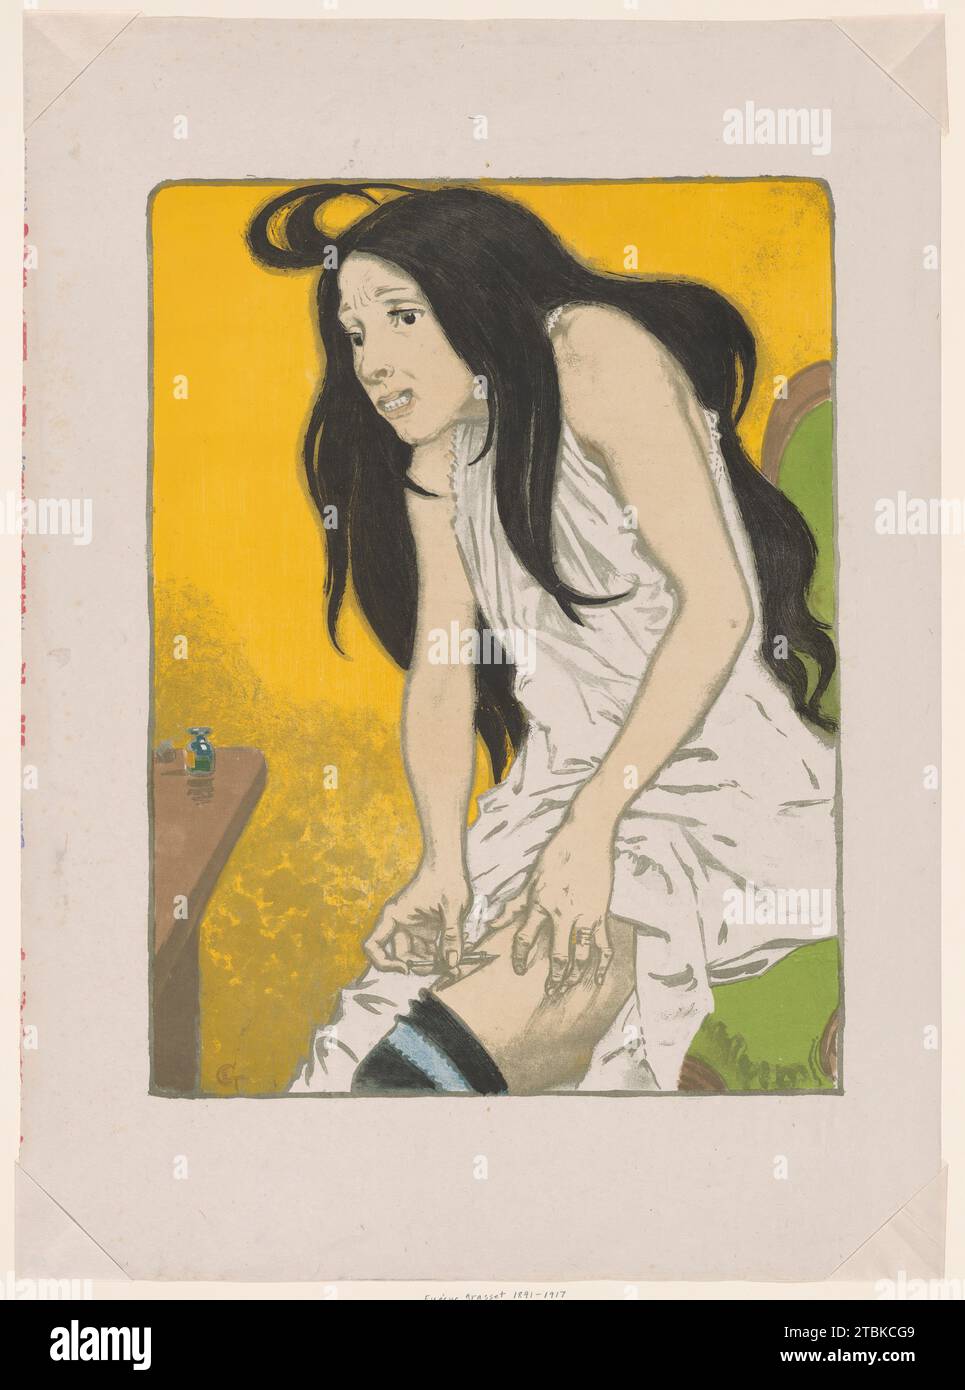 Morphine Addict, de l'Album of Original Prints from Galerie Vollard (Morphinomaniac, de l'album d'estampes originales de la Galerie Vollard), 1897. Banque D'Images